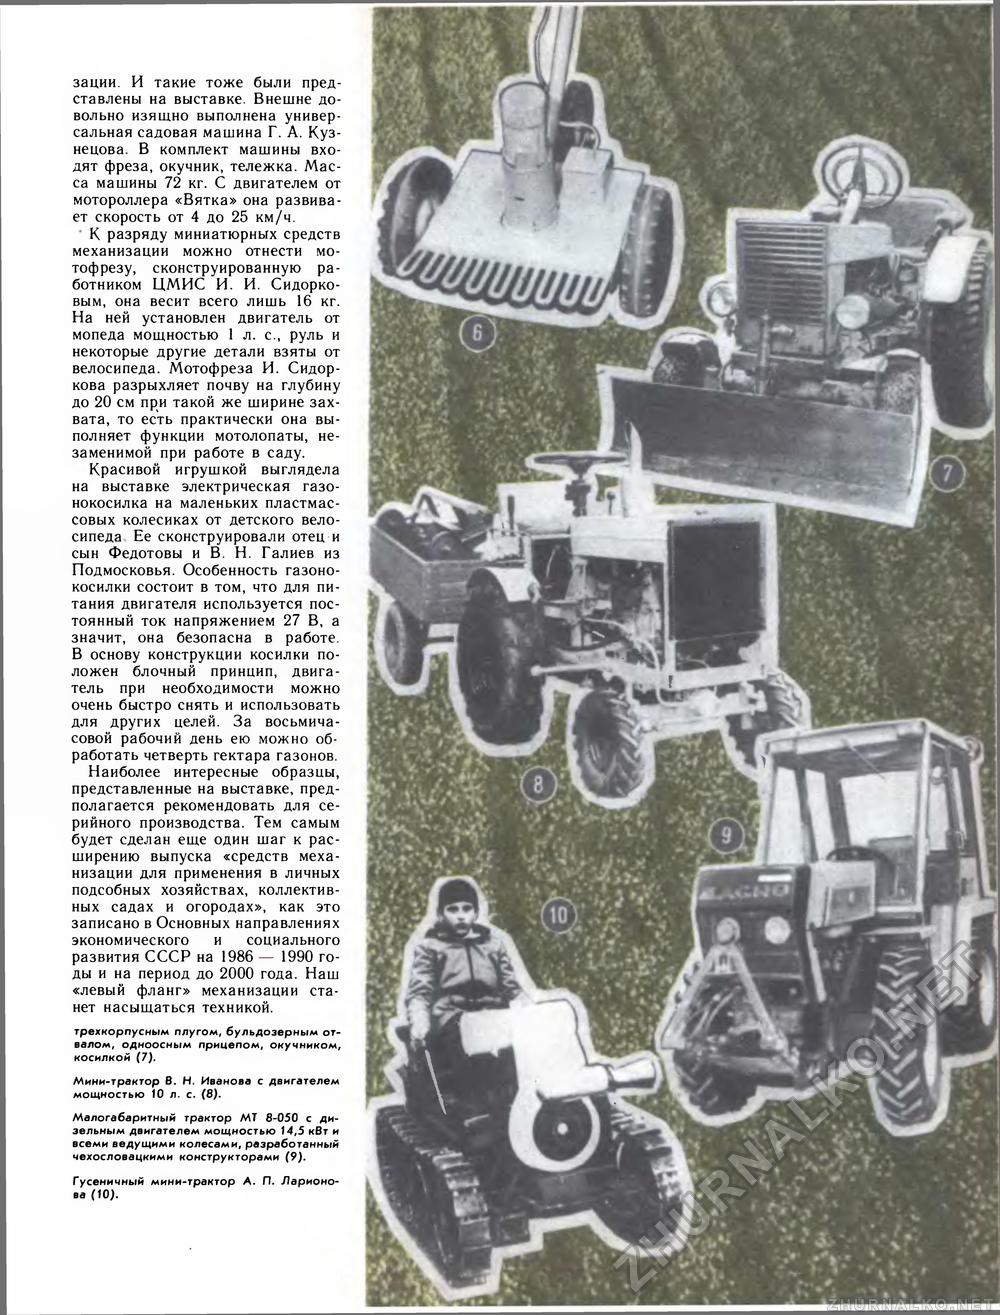 Как сделать мини трактор своими руками (Самоделки) DOC, Djvu, JPEG, MP4